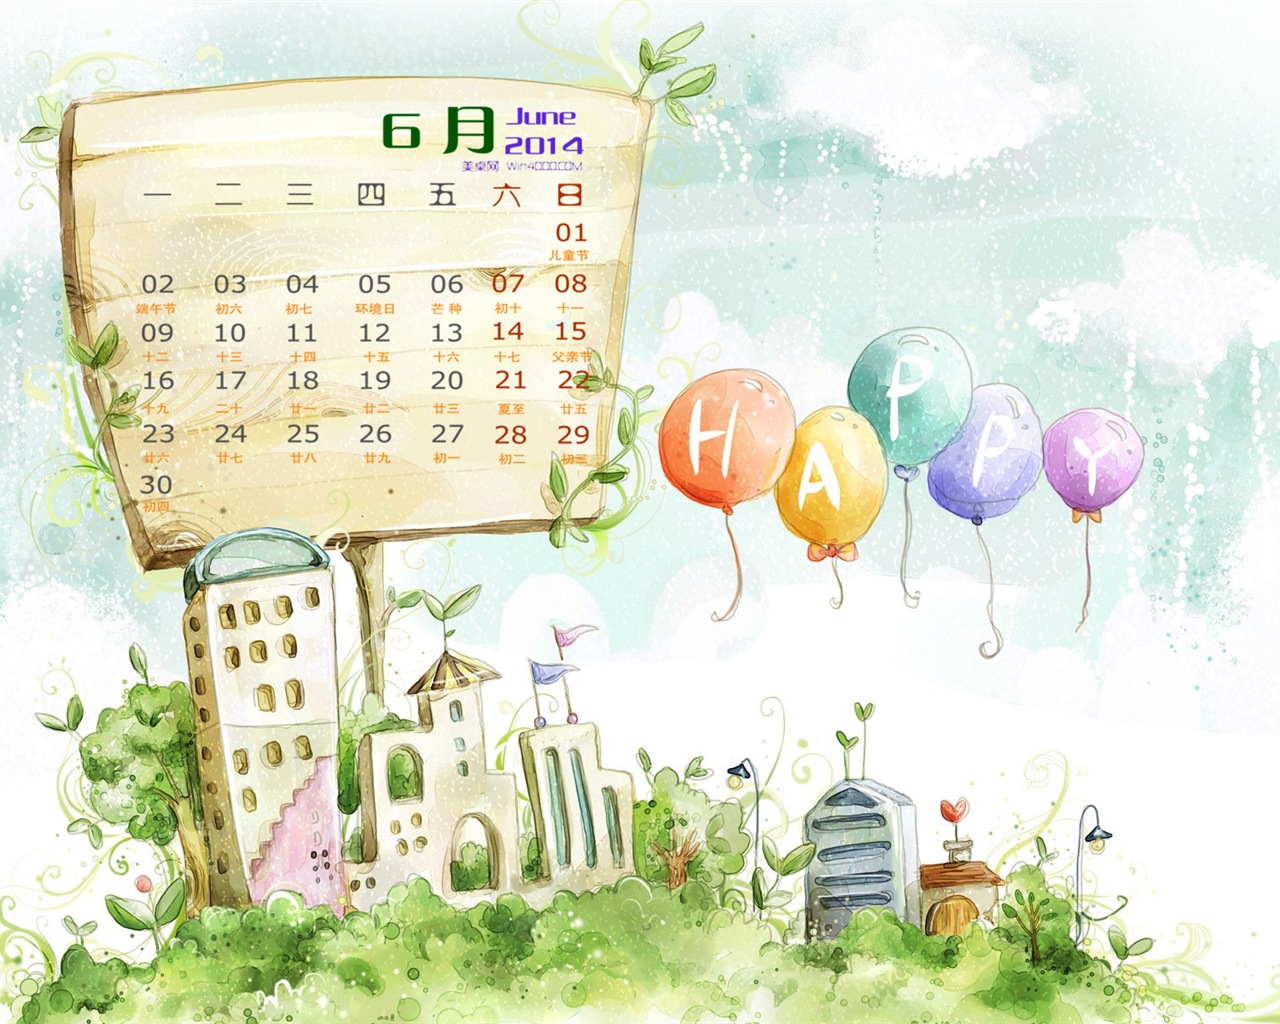 Juin 2014 calendriers fond d'écran (1) #11 - 1280x1024